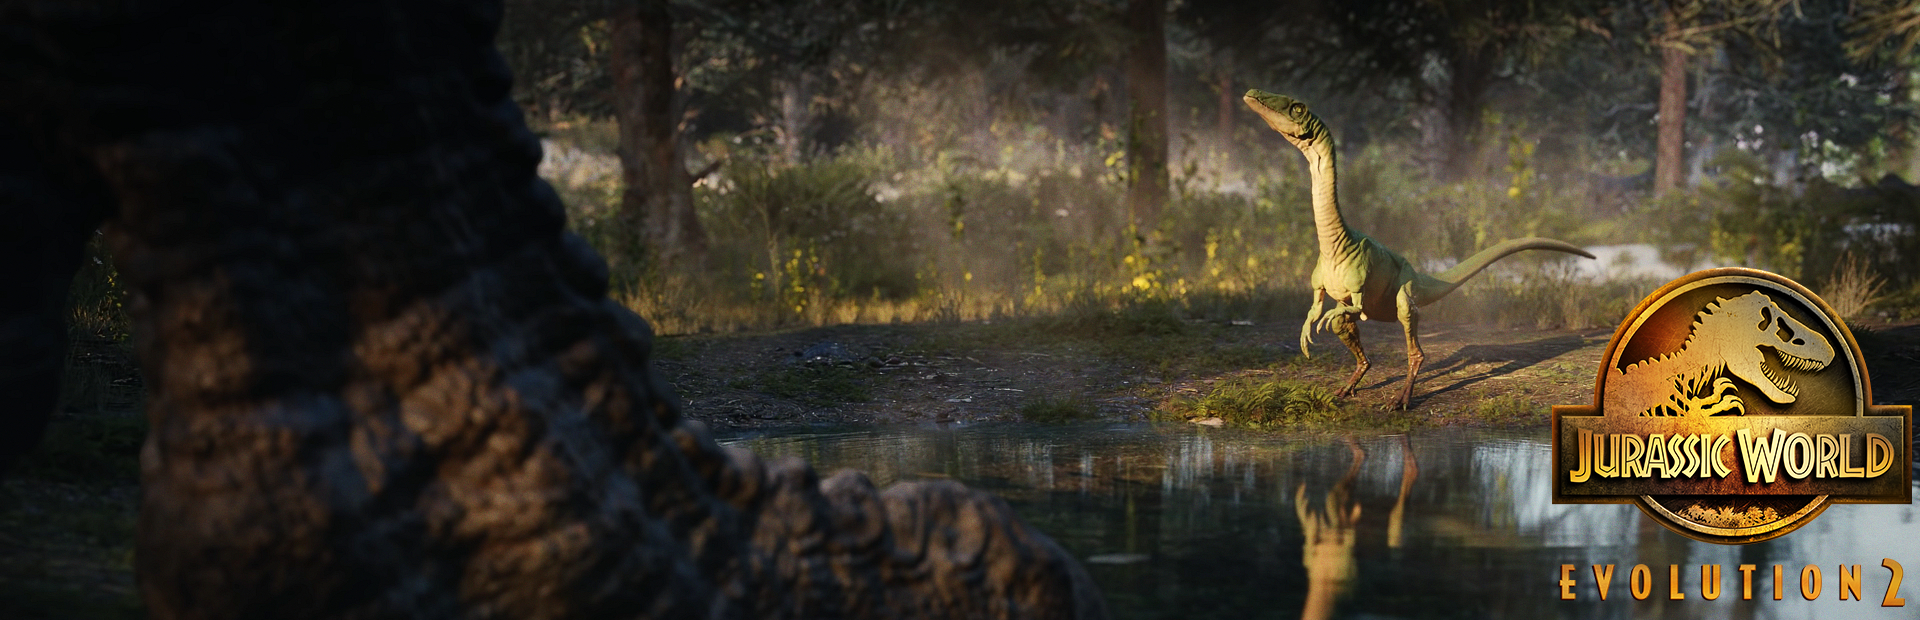 دانلود بازی Jurassic World Evolution 2 برای PC | گیمباتو